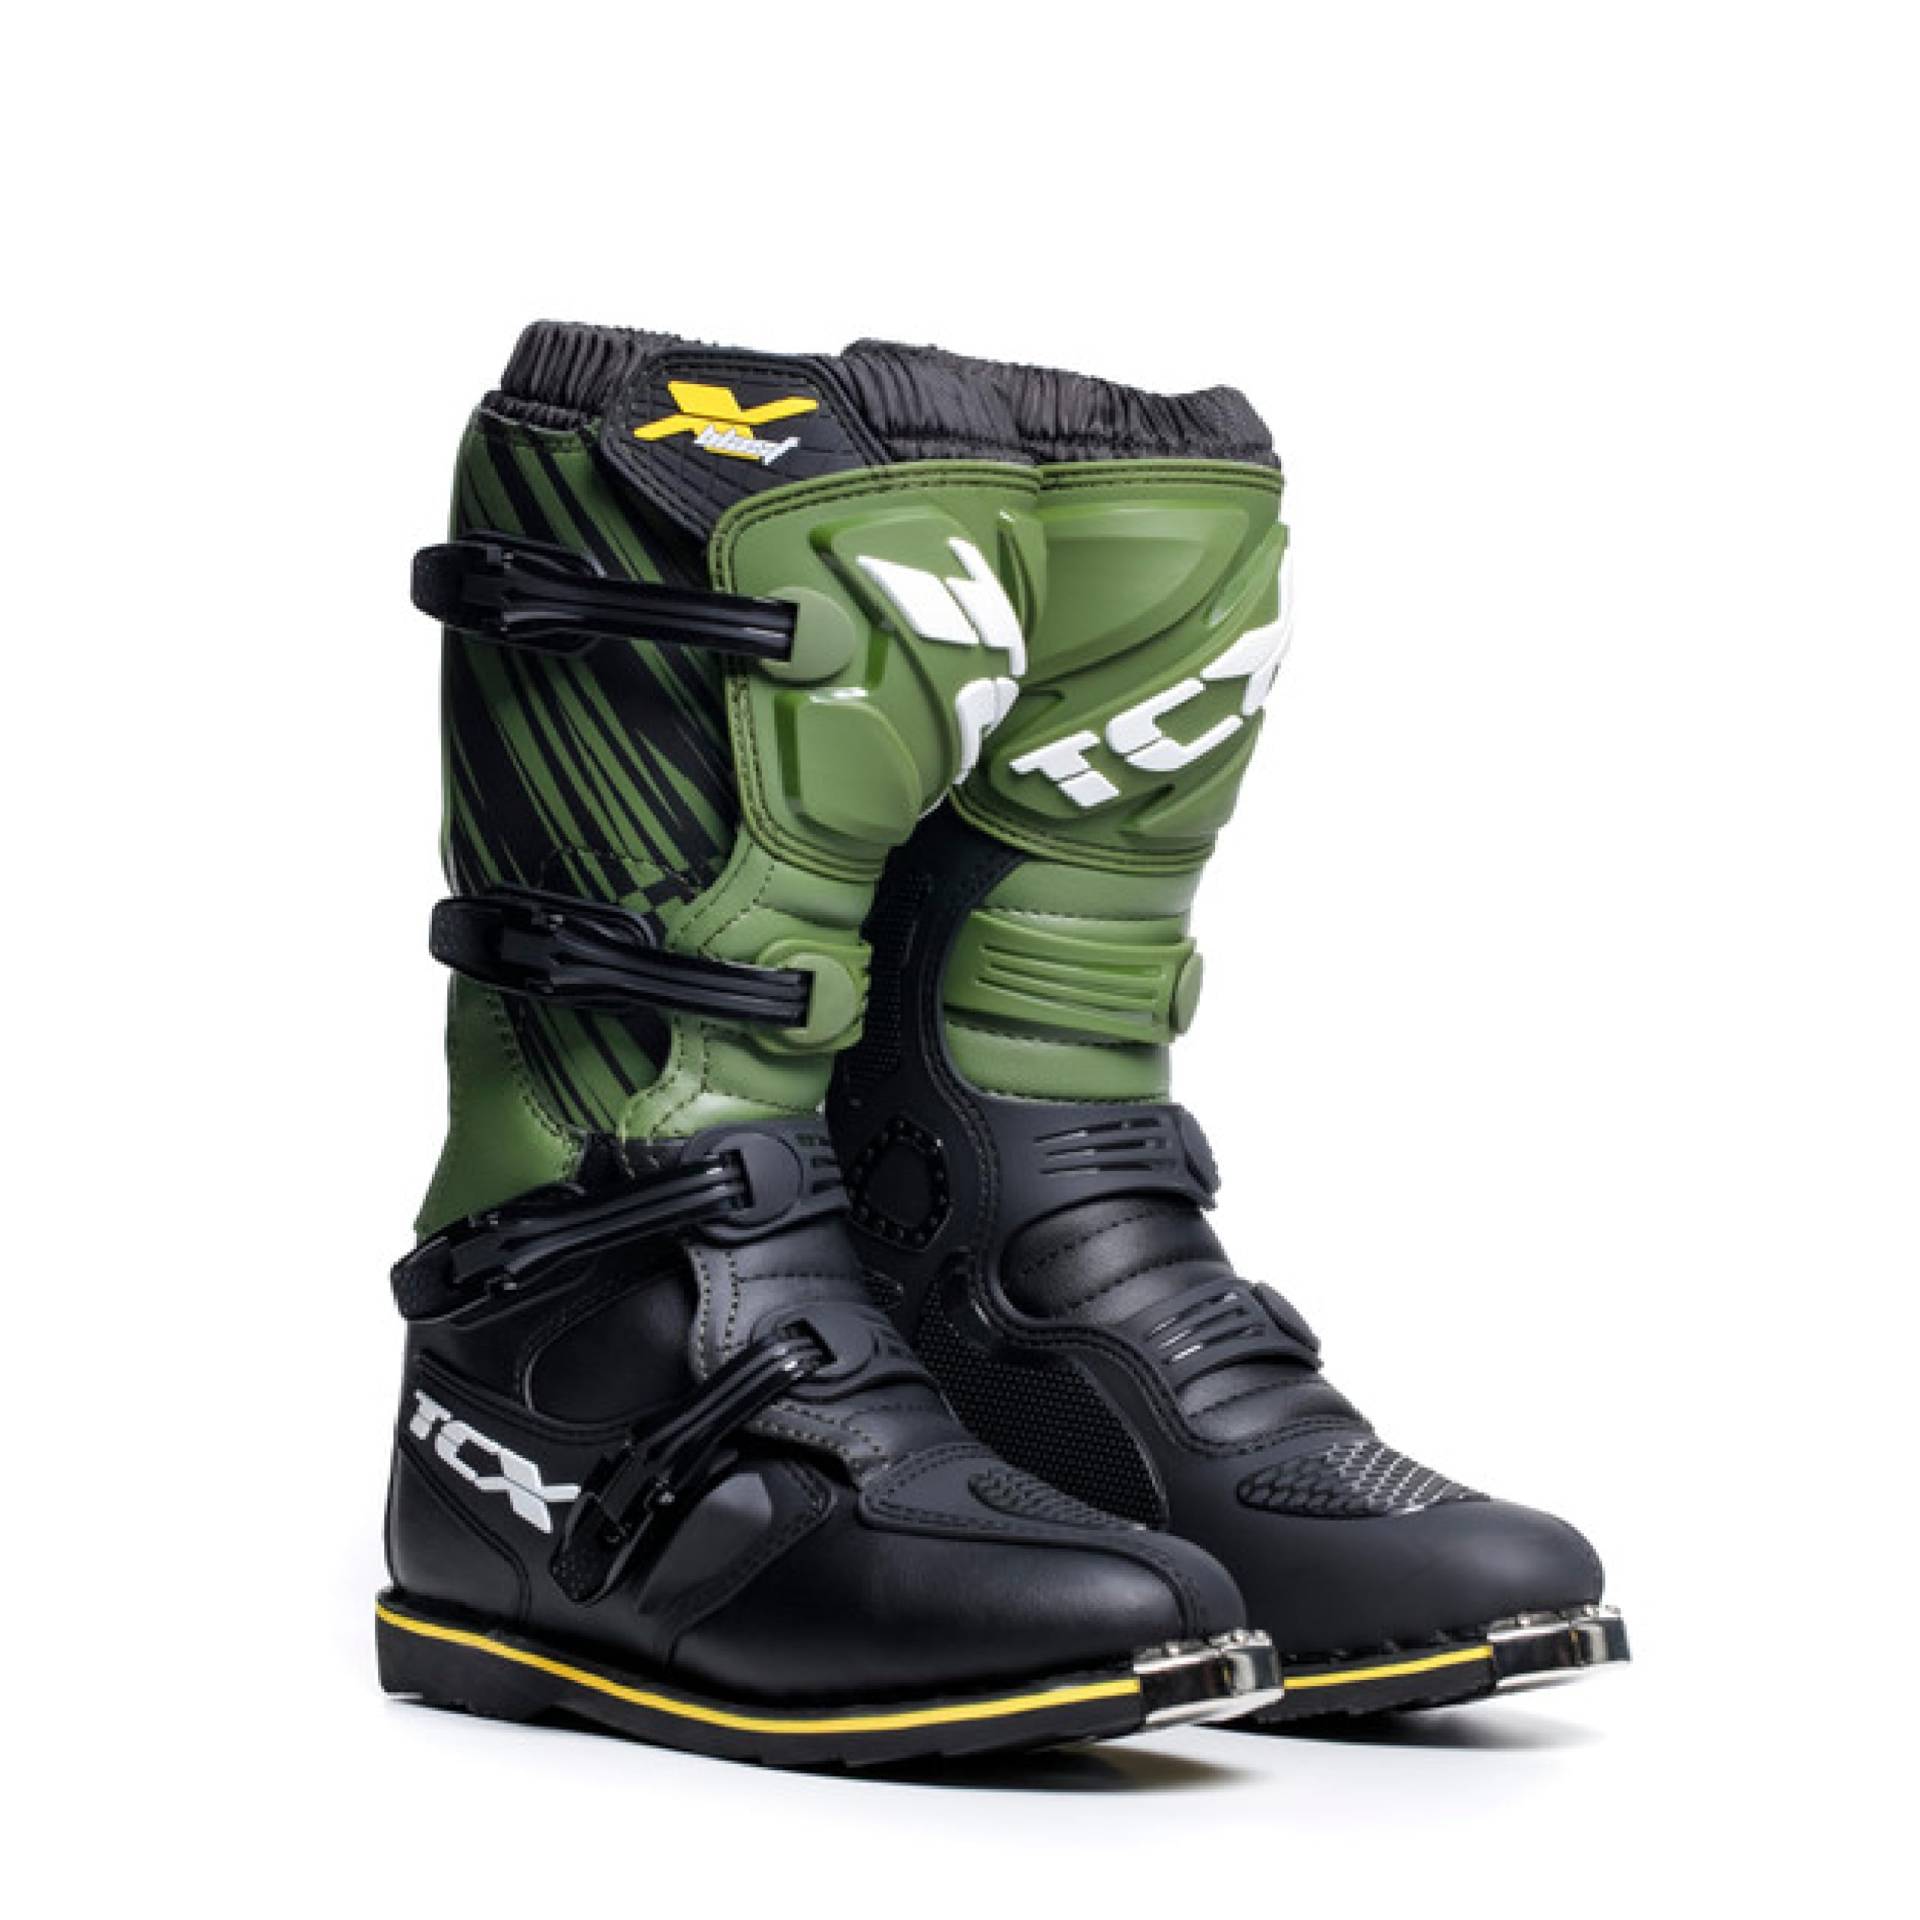 TCX - X-Blast, Herren Motocross-Stiefel, Enduro-Stiefel, Off-Road-Stiefel mit Mikrofaser-Obermaterial und Goodyear-Konstruktionssohle, Schwarz/grün/gelb von TCX